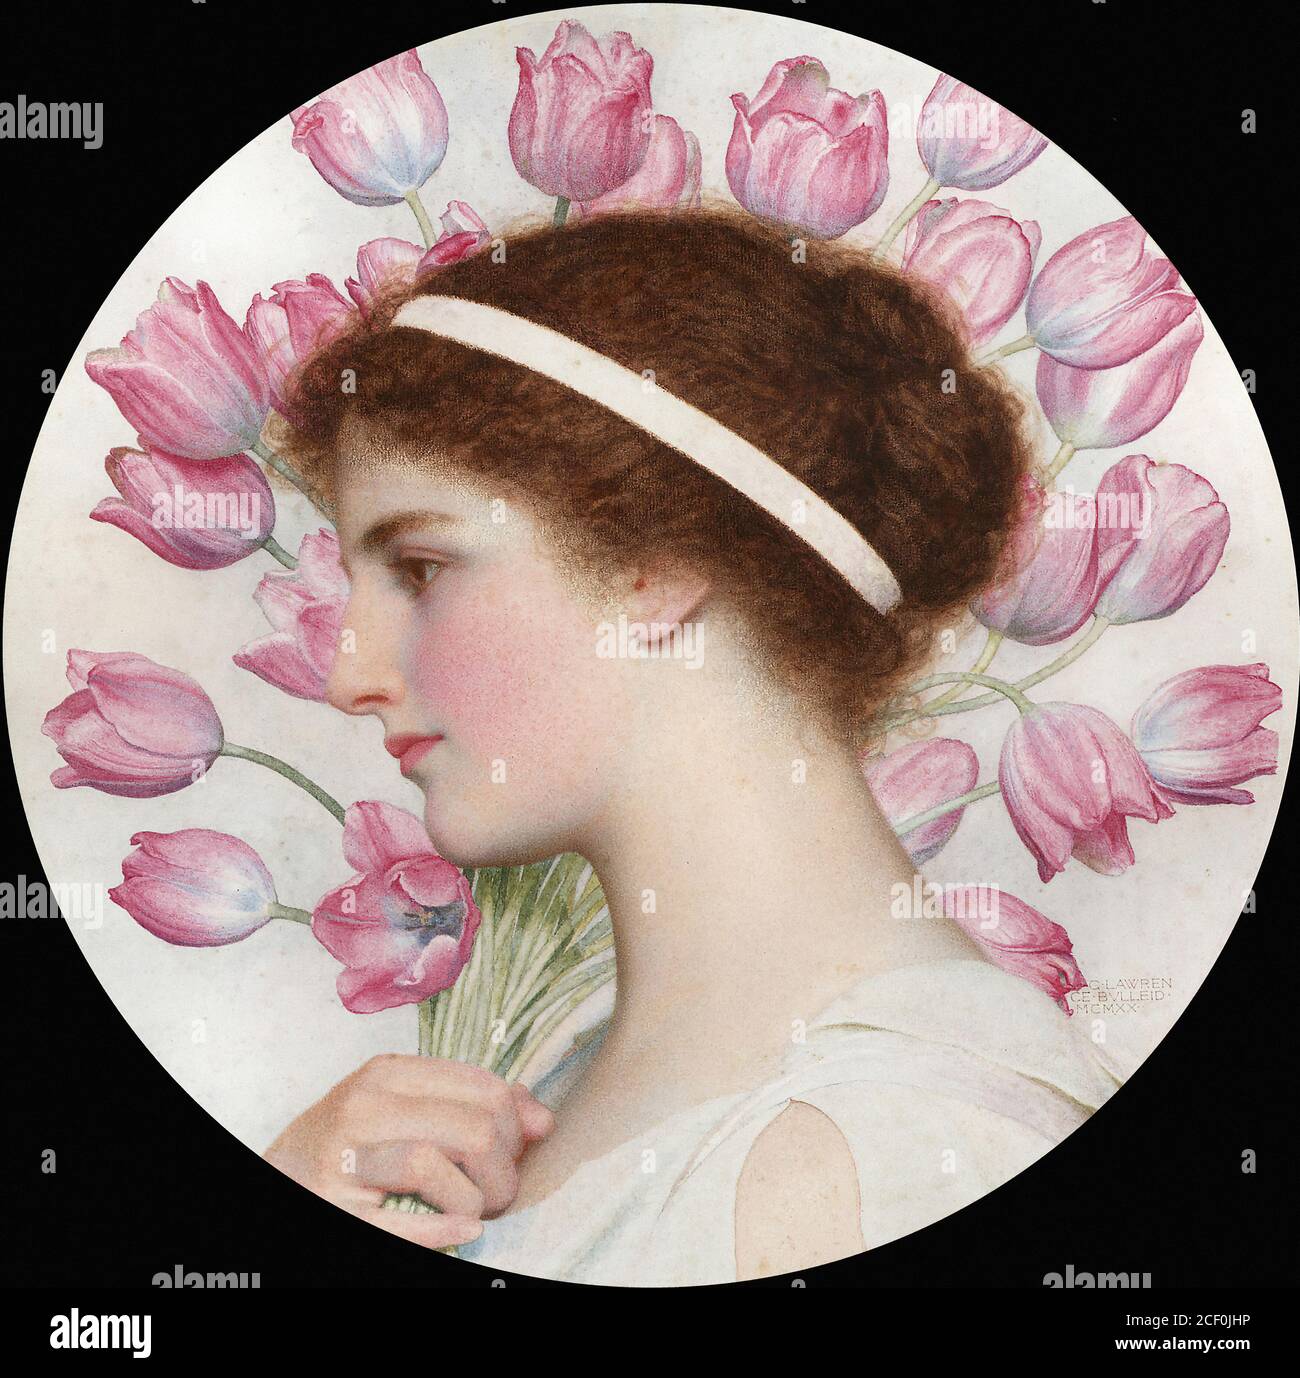 Bulleid George Lawrence - une fille dans le roulement de robe classique Tulipes - British School - 19e siècle Banque D'Images